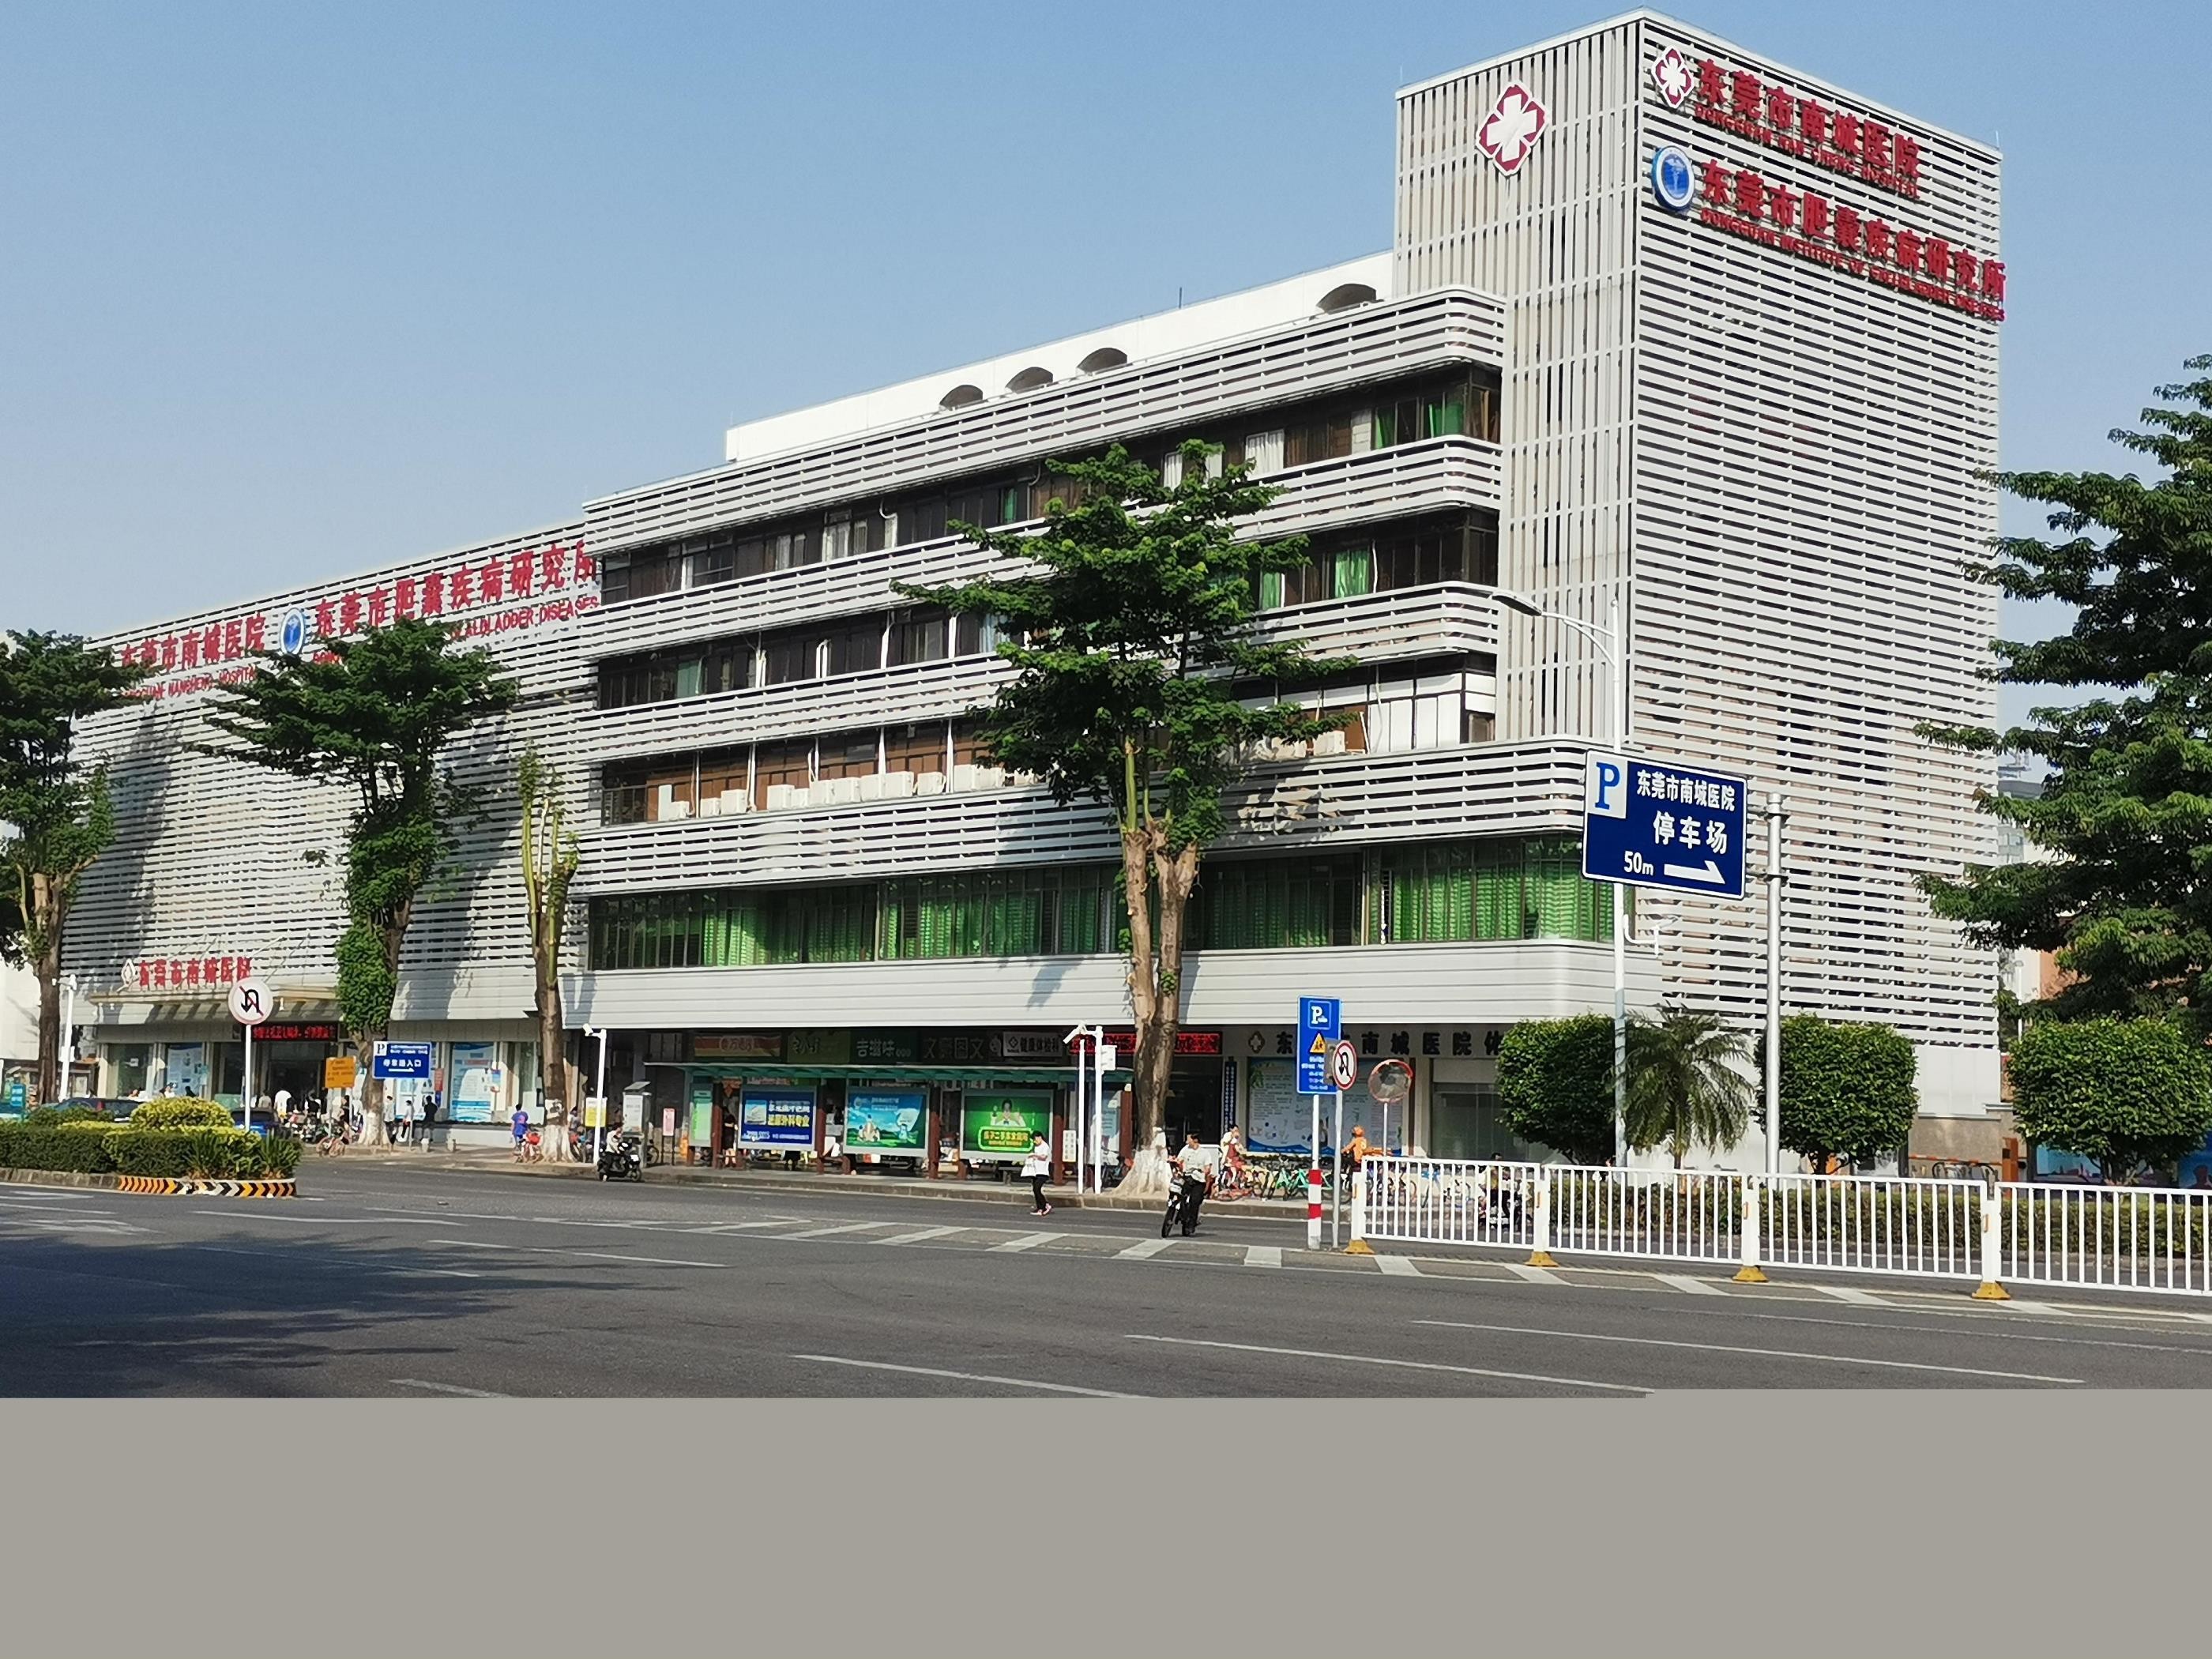 آخرین مورد شرکت بیمارستان نانچنگ شهر دونگوان